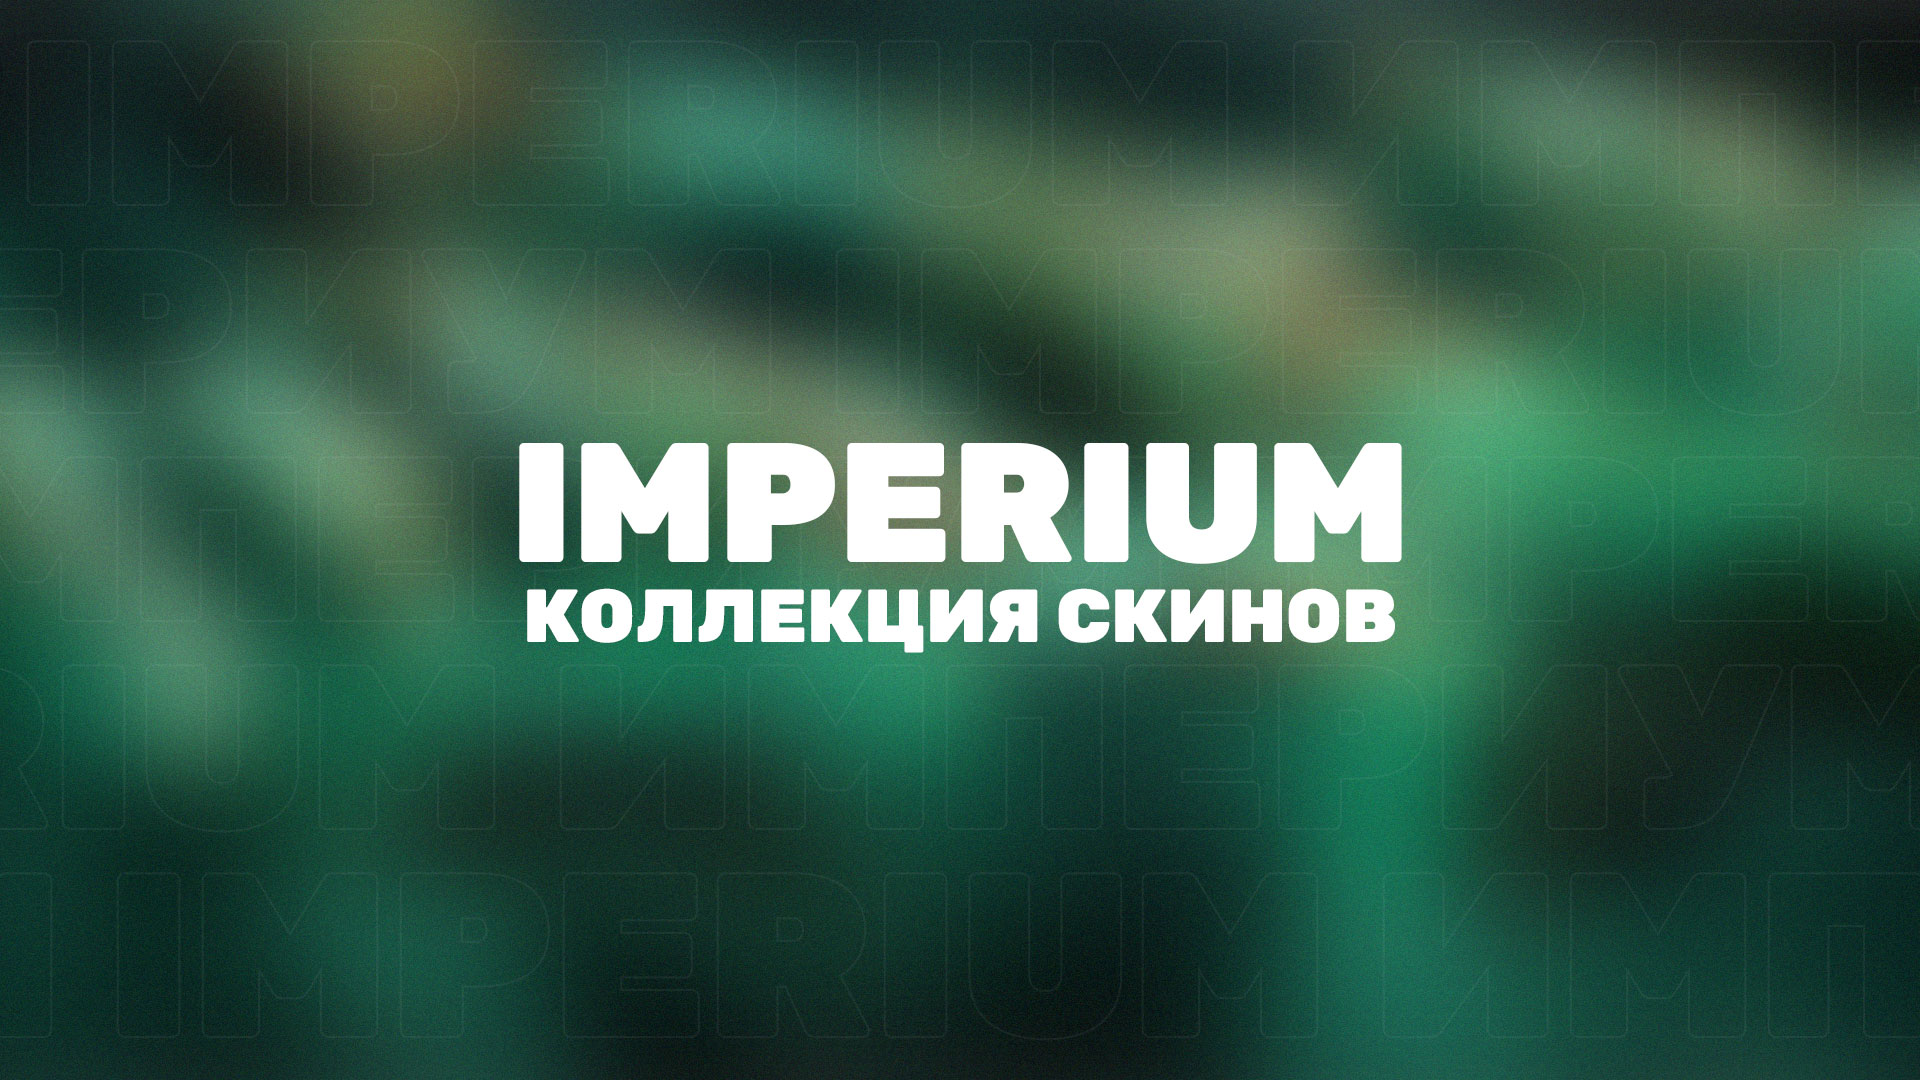 В Valorant появилась новая коллекция скинов Империум, которая начнет продаваться после начала нового акта.